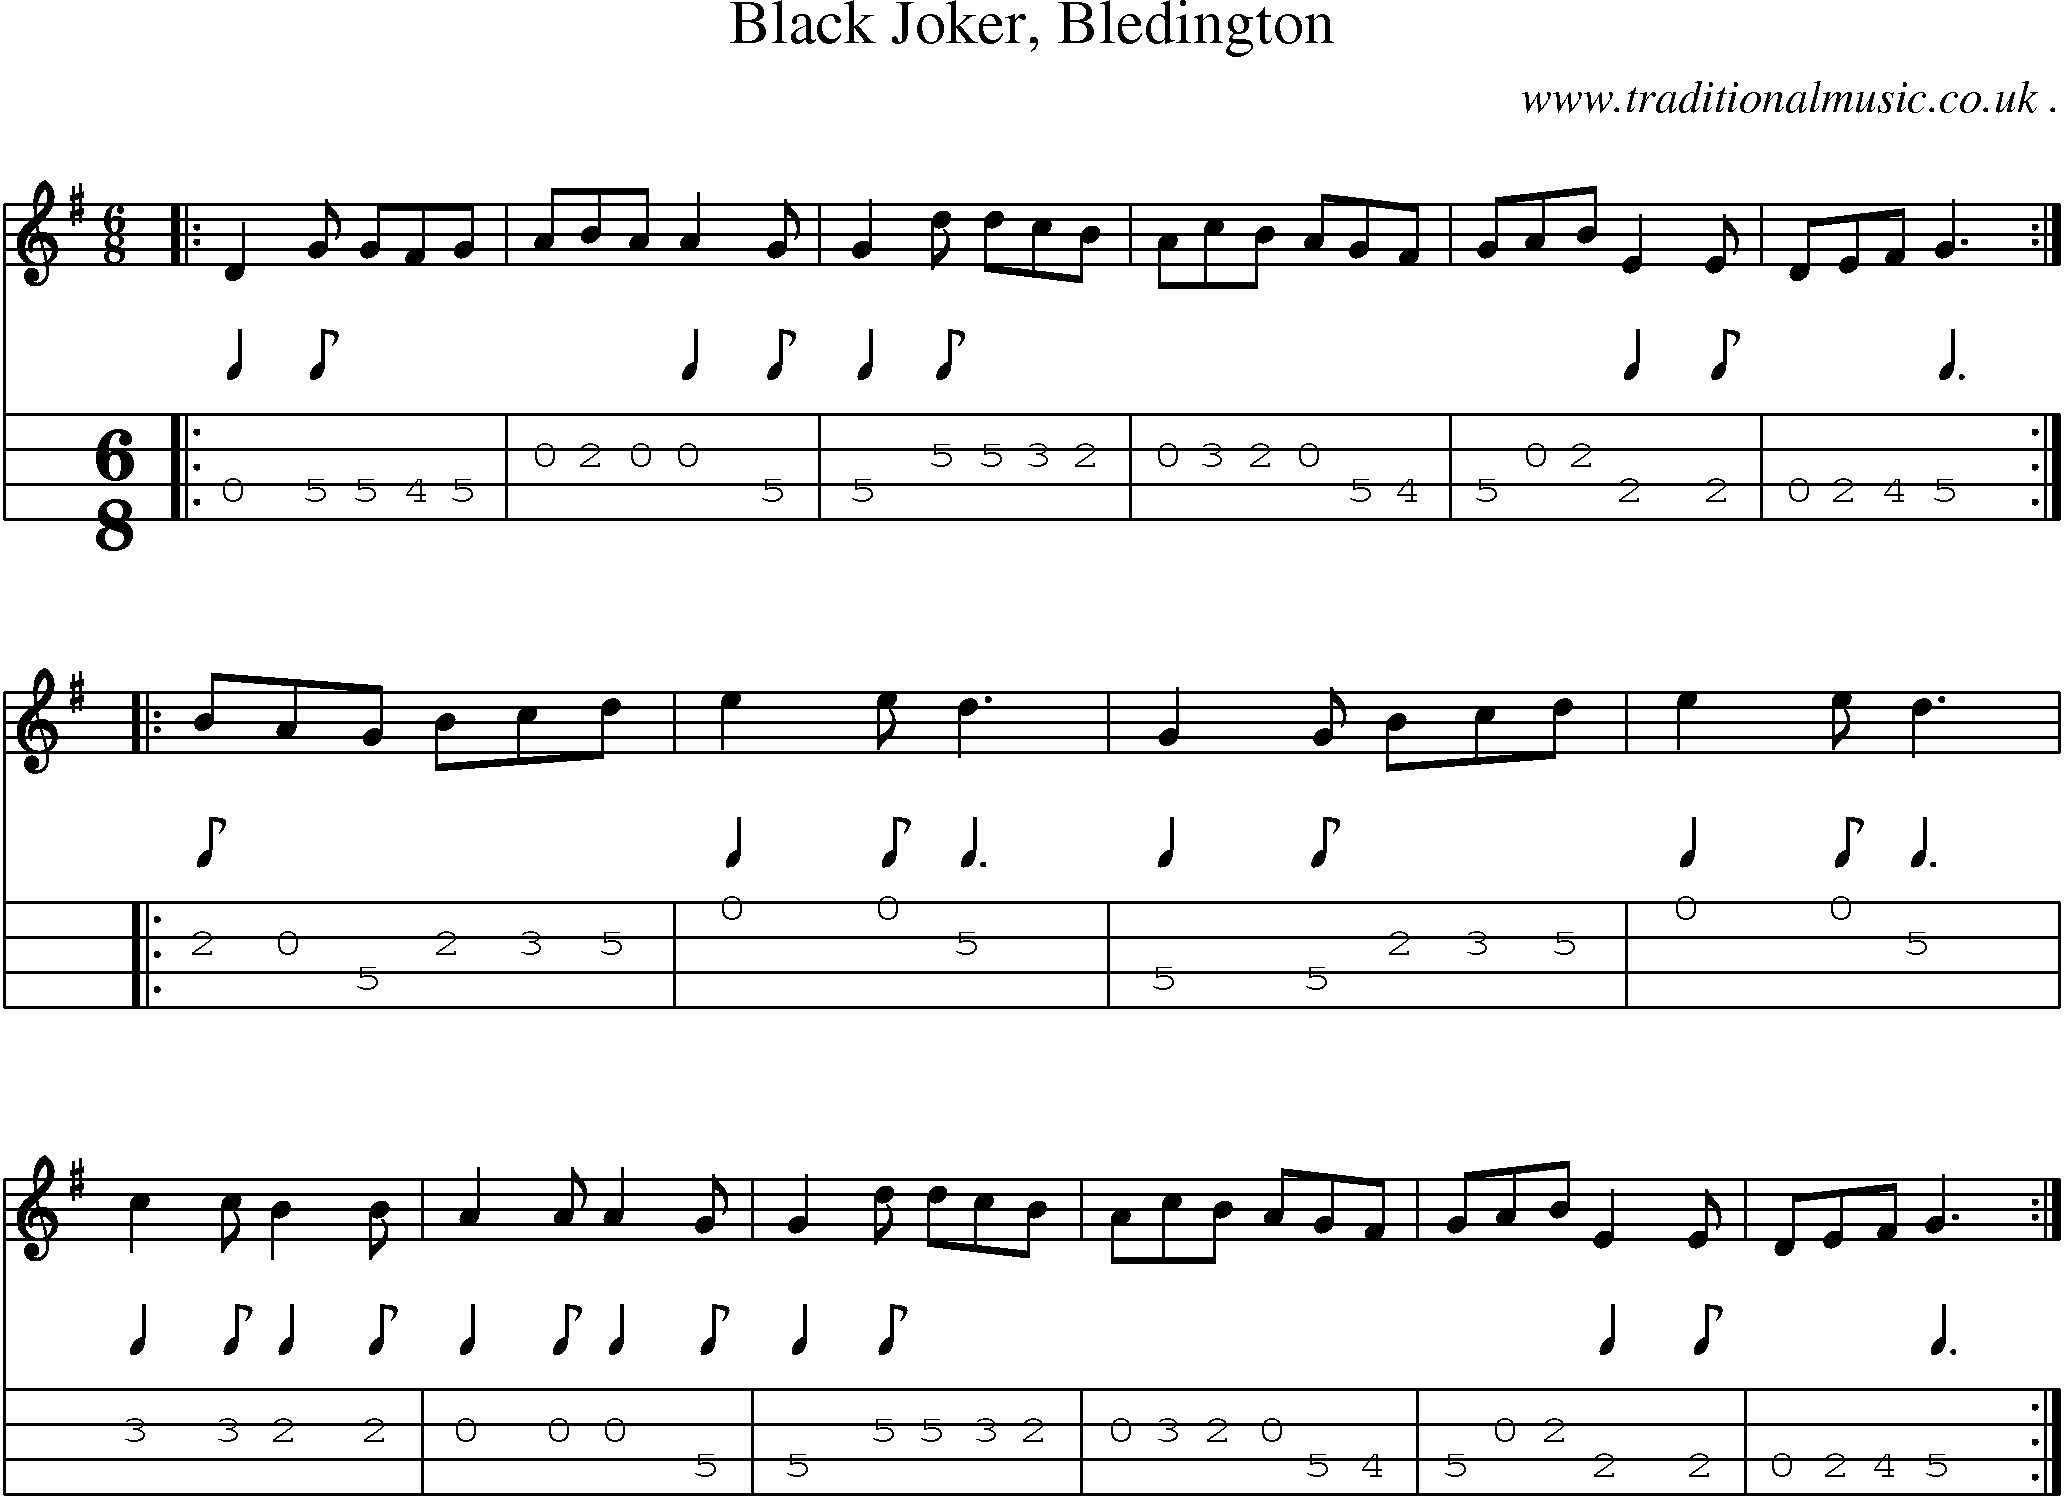 Sheet-Music and Mandolin Tabs for Black Joker Bledington